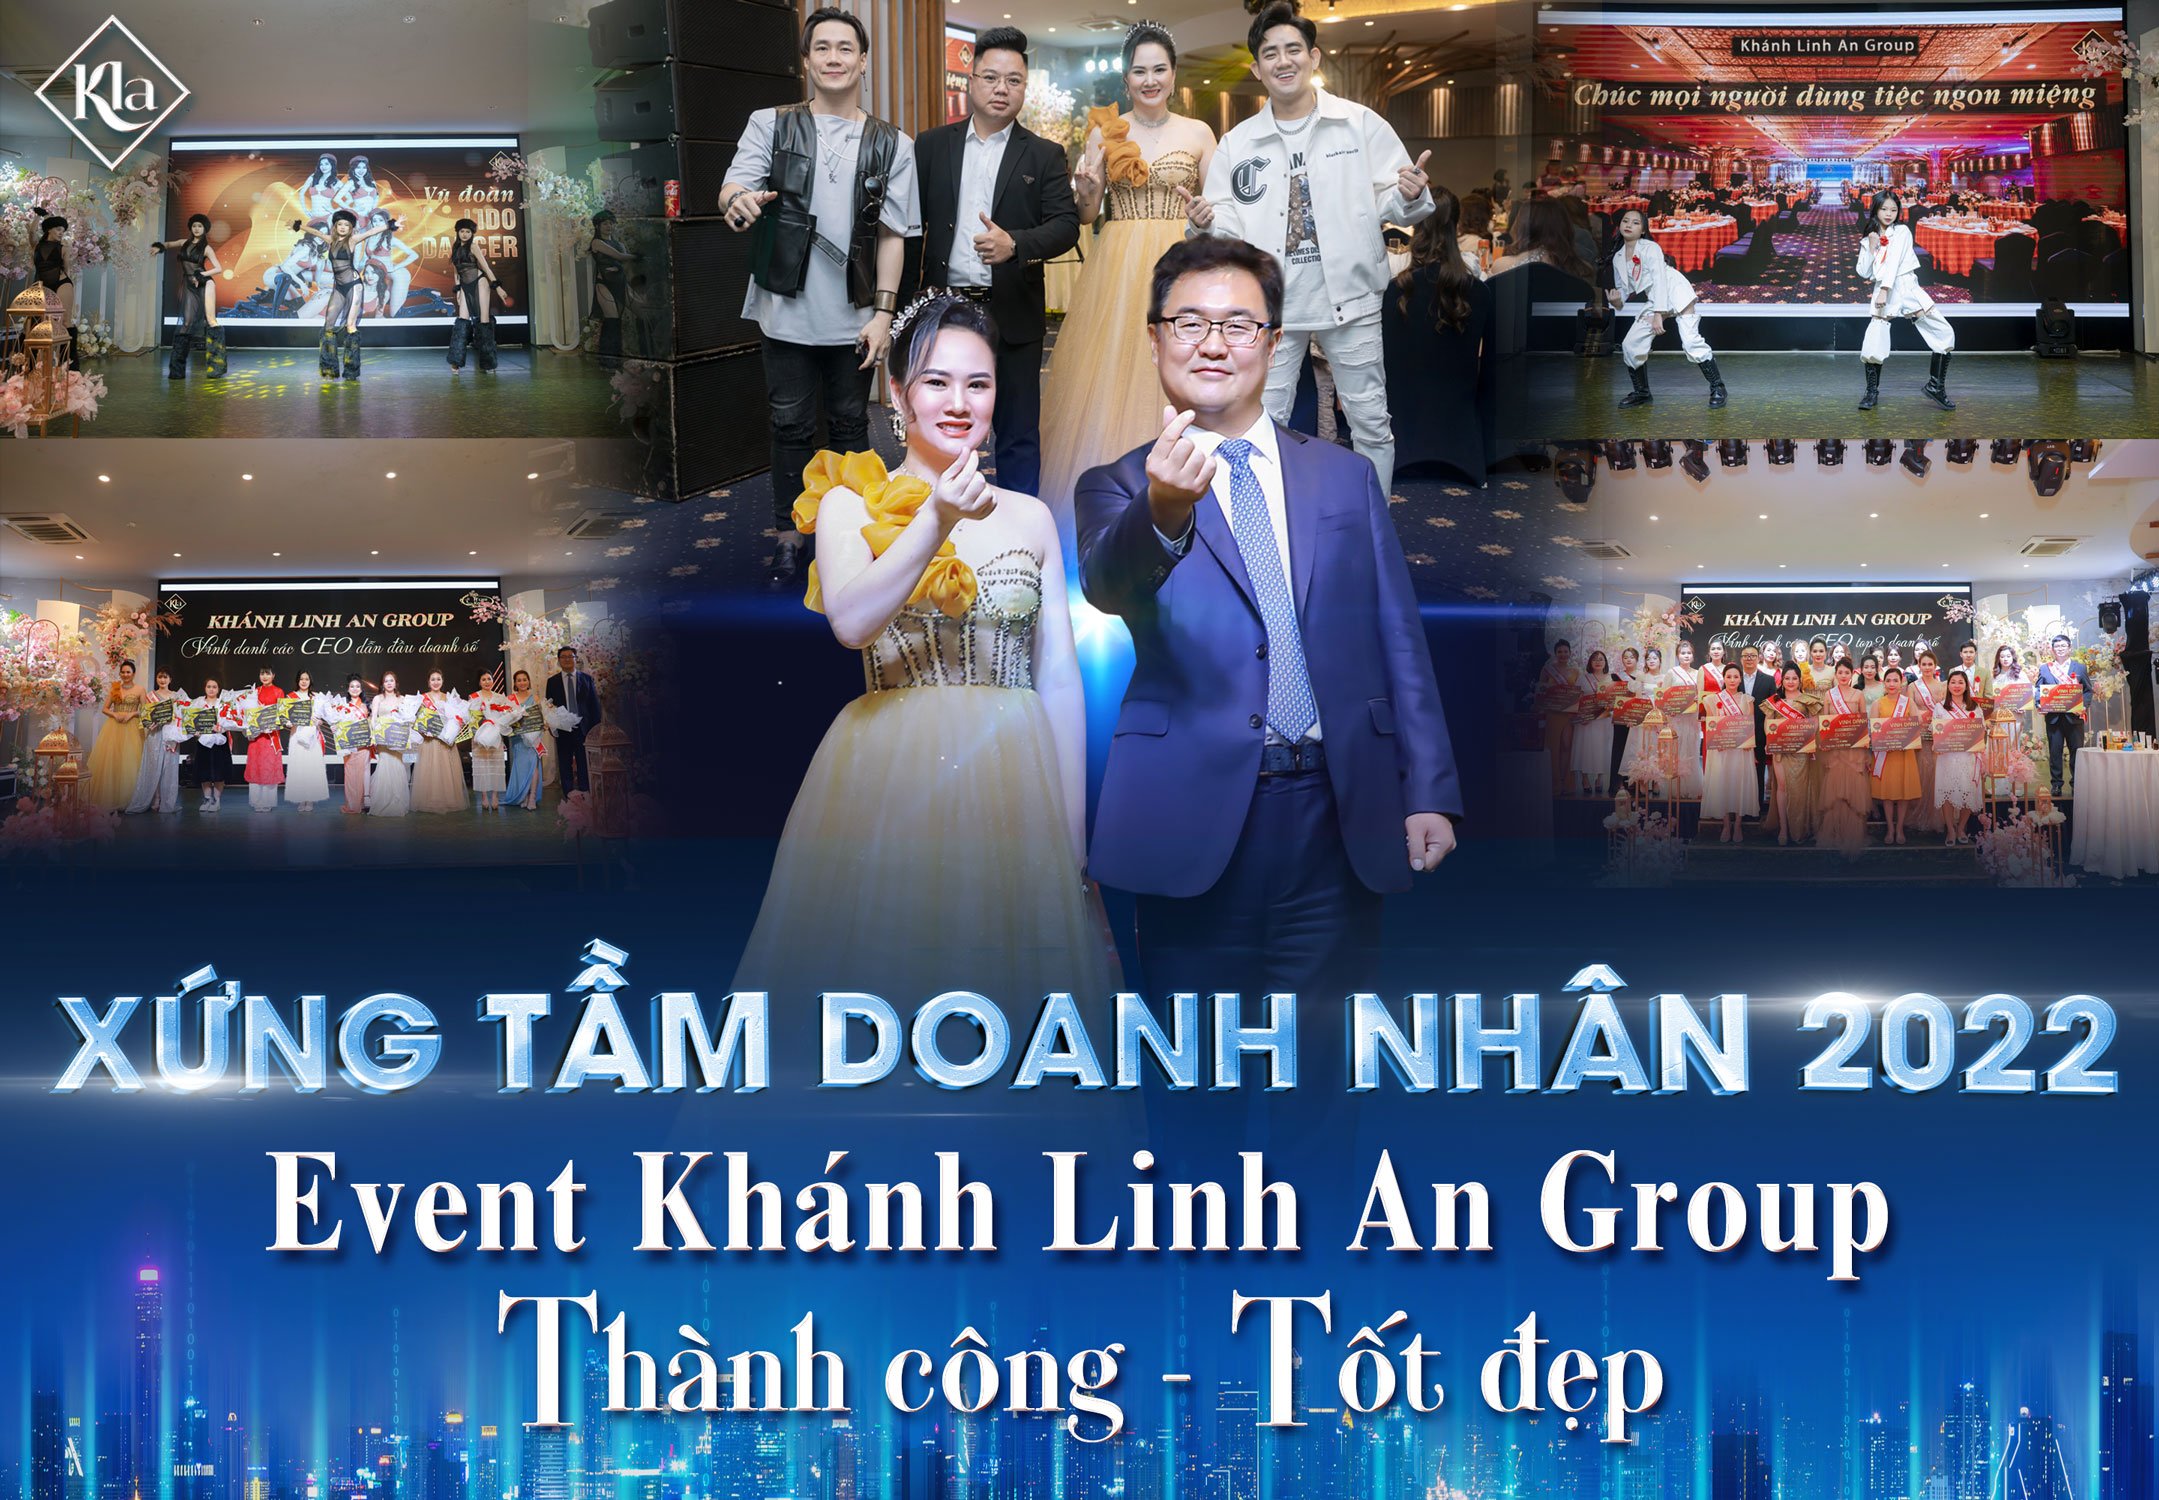 Xứng tầm doanh nhân 2022 – Siêu sự kiện “Event cuối năm Khánh Linh An Group”